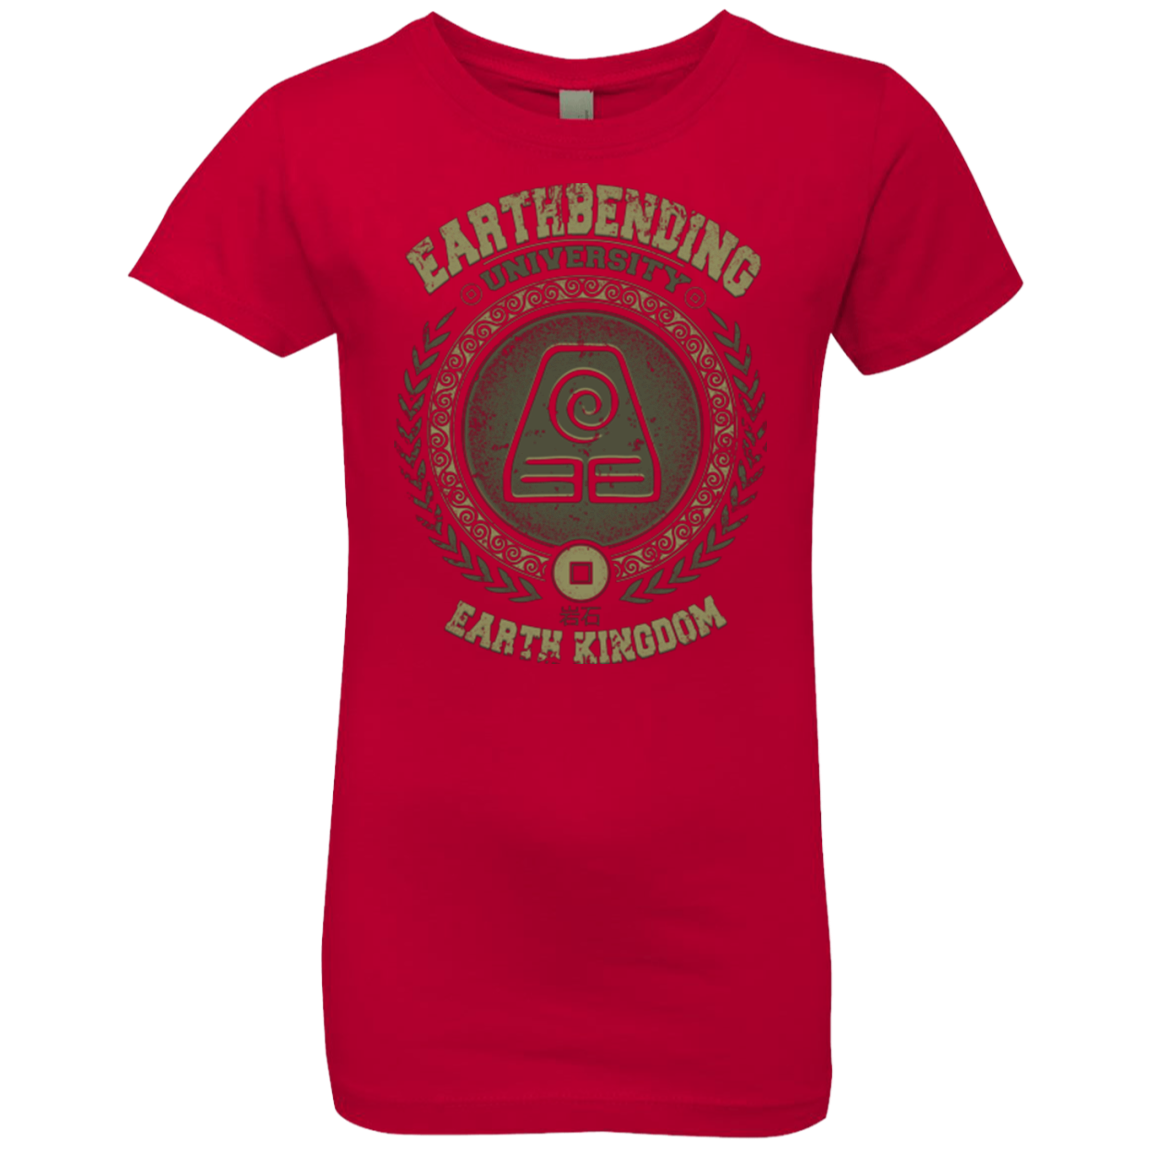 Earthbending university Girls Premium T-Shirt